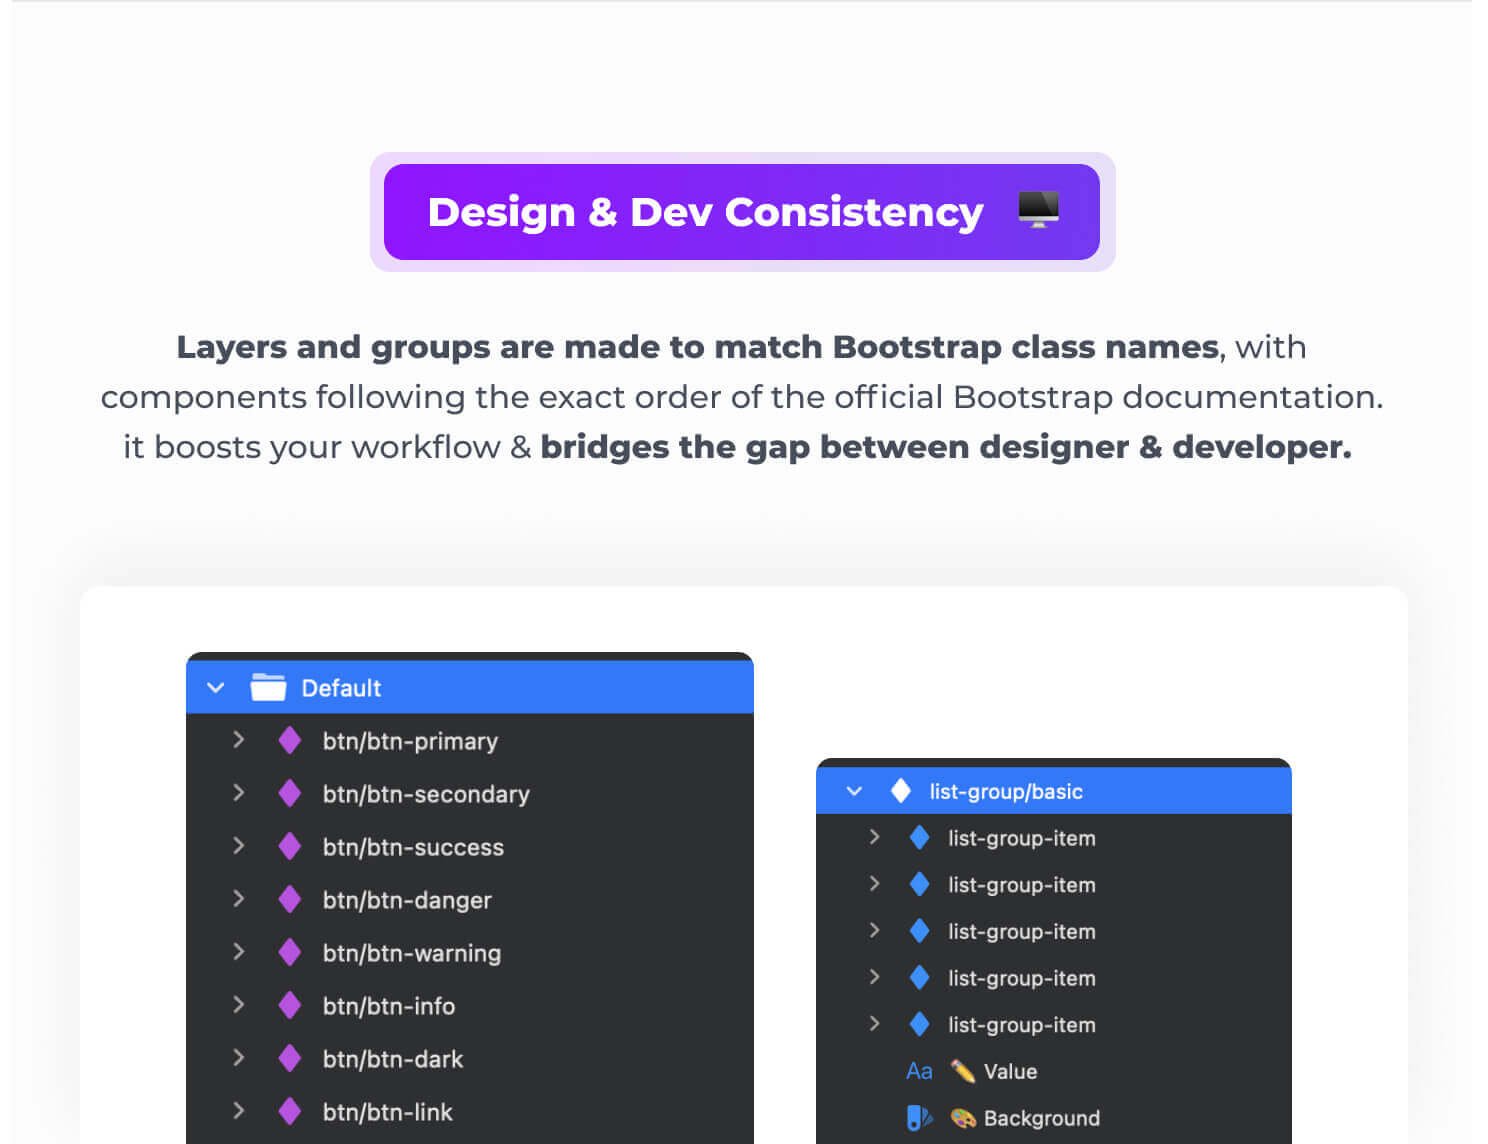 Design & Dev Consistency